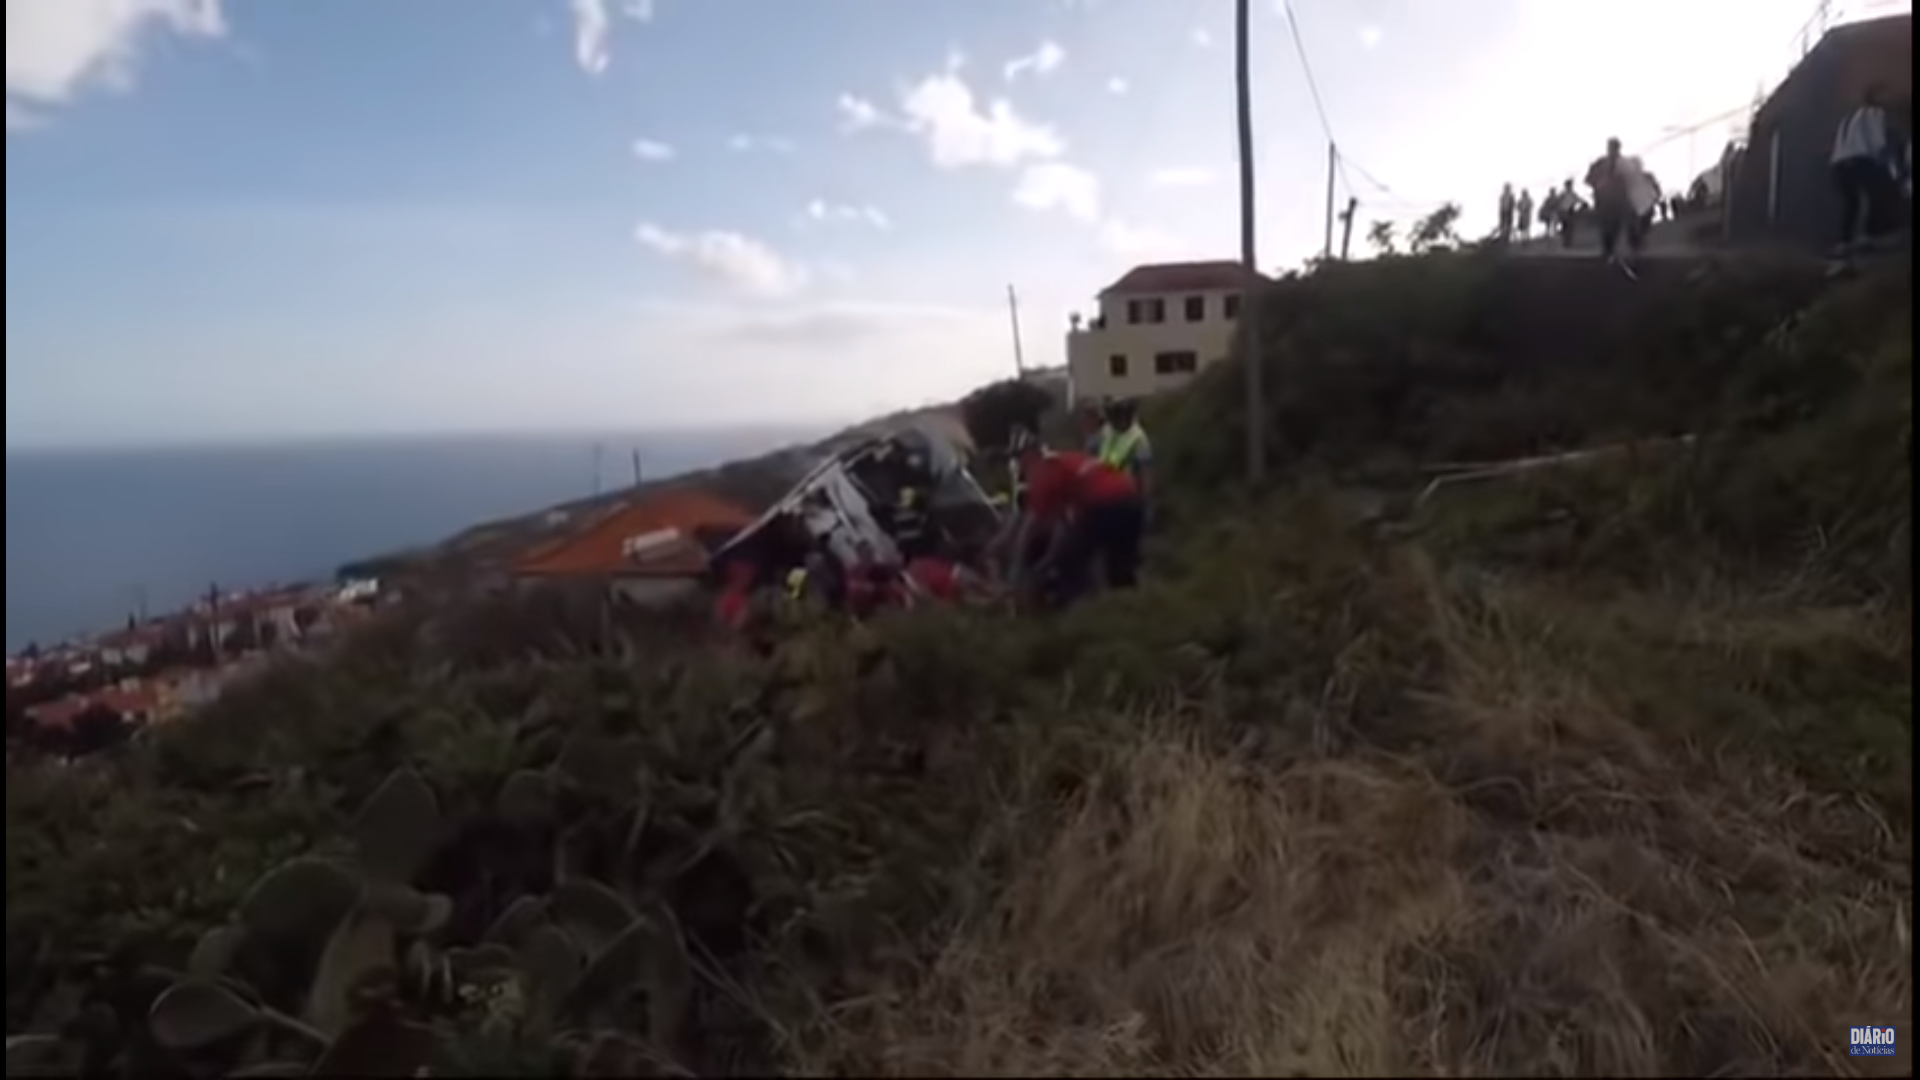 Tragèdia per l'accident mortal d'un autobús a Maderia